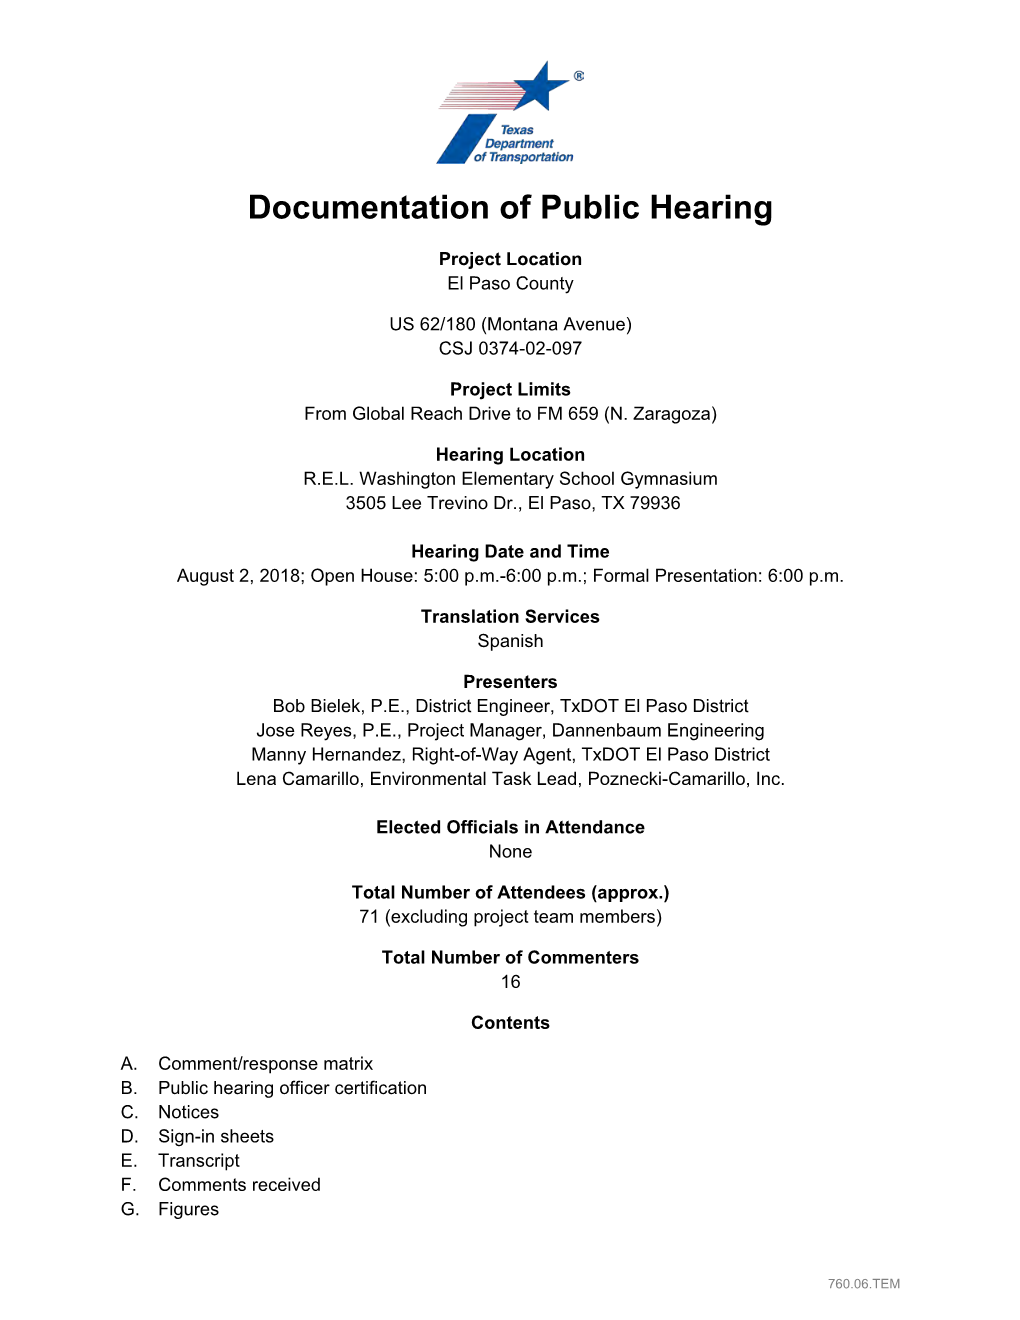 Public Hearing Summary